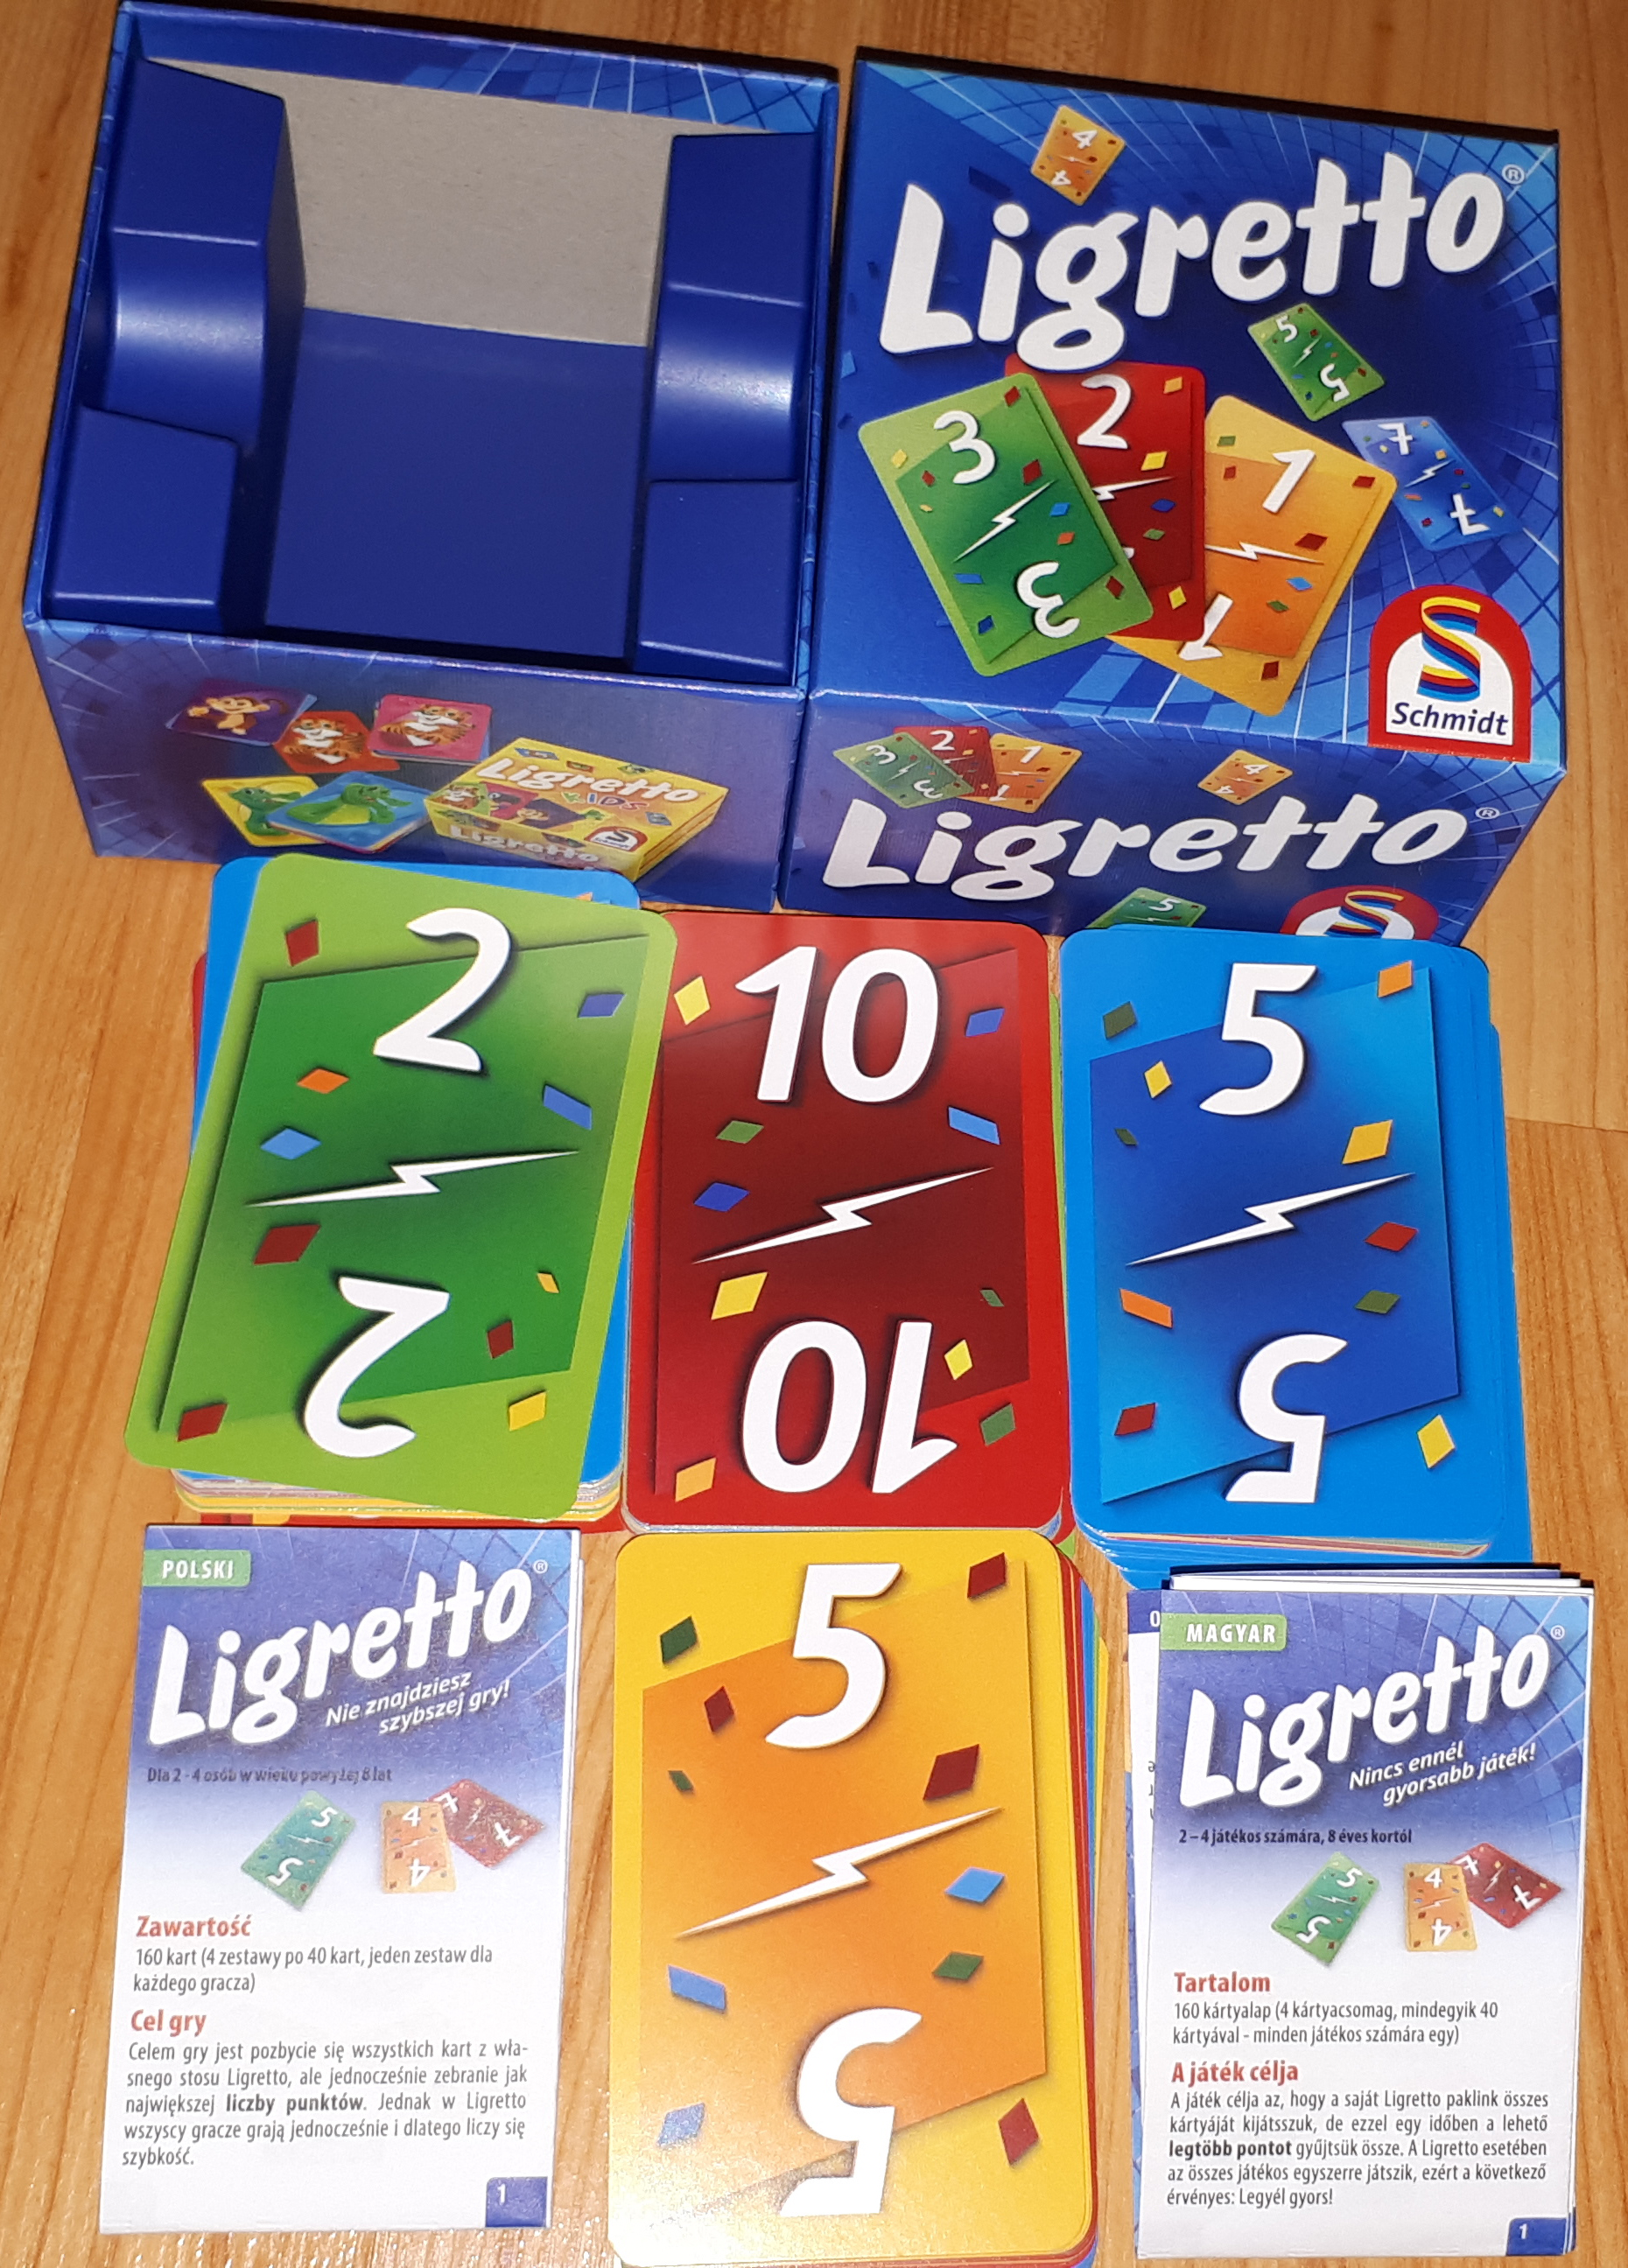 Ligretto (Kék) Kártyajáték bemutató